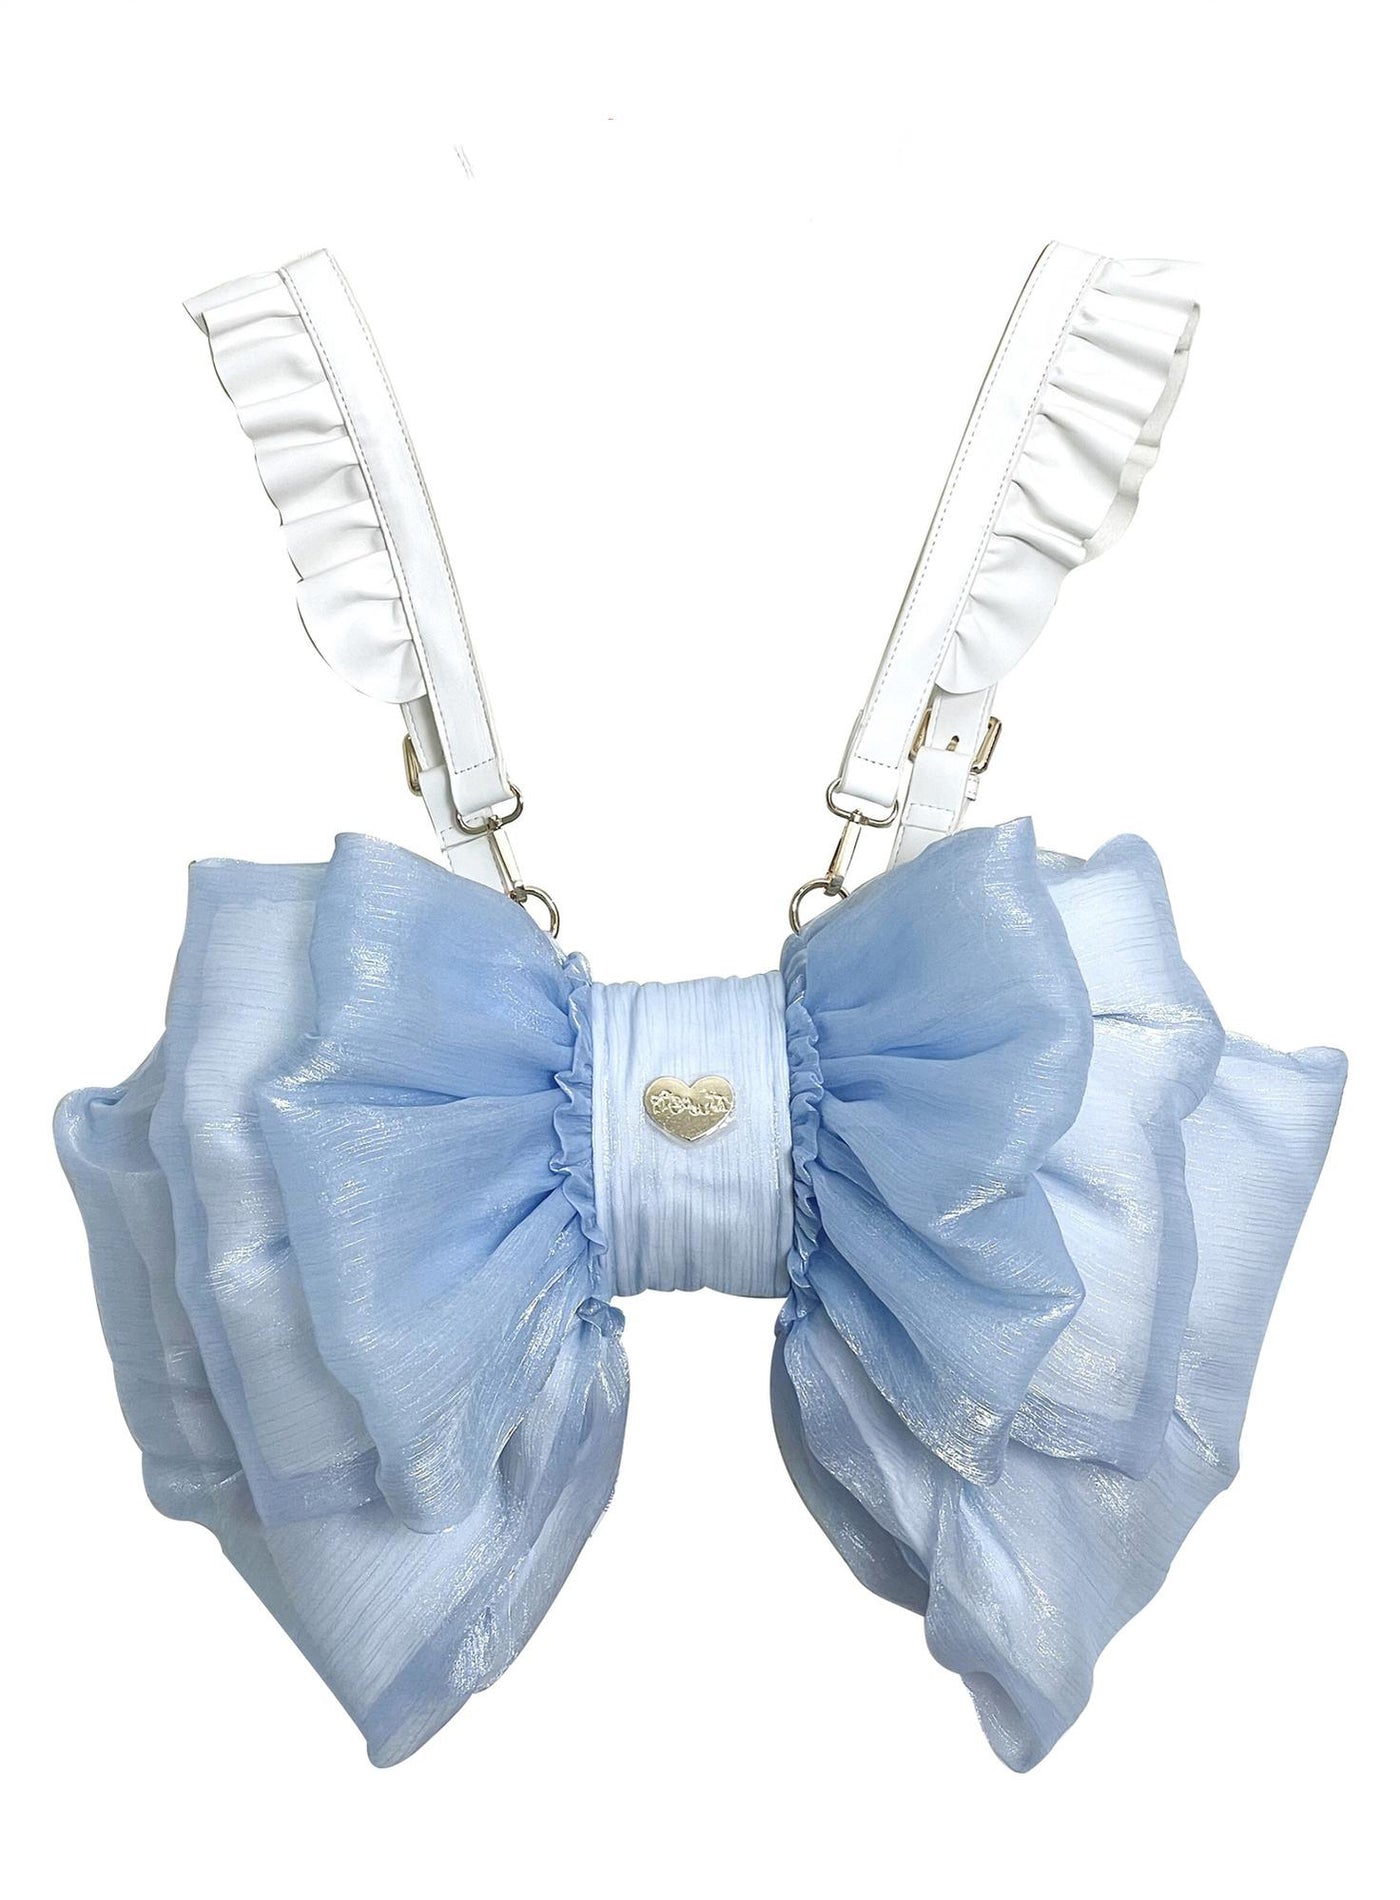 (Buyforme)Boguta~ Satin Butterfly Bow Bag Versatile Elegance Lolita Bag S blue bag+white shoulder strap 